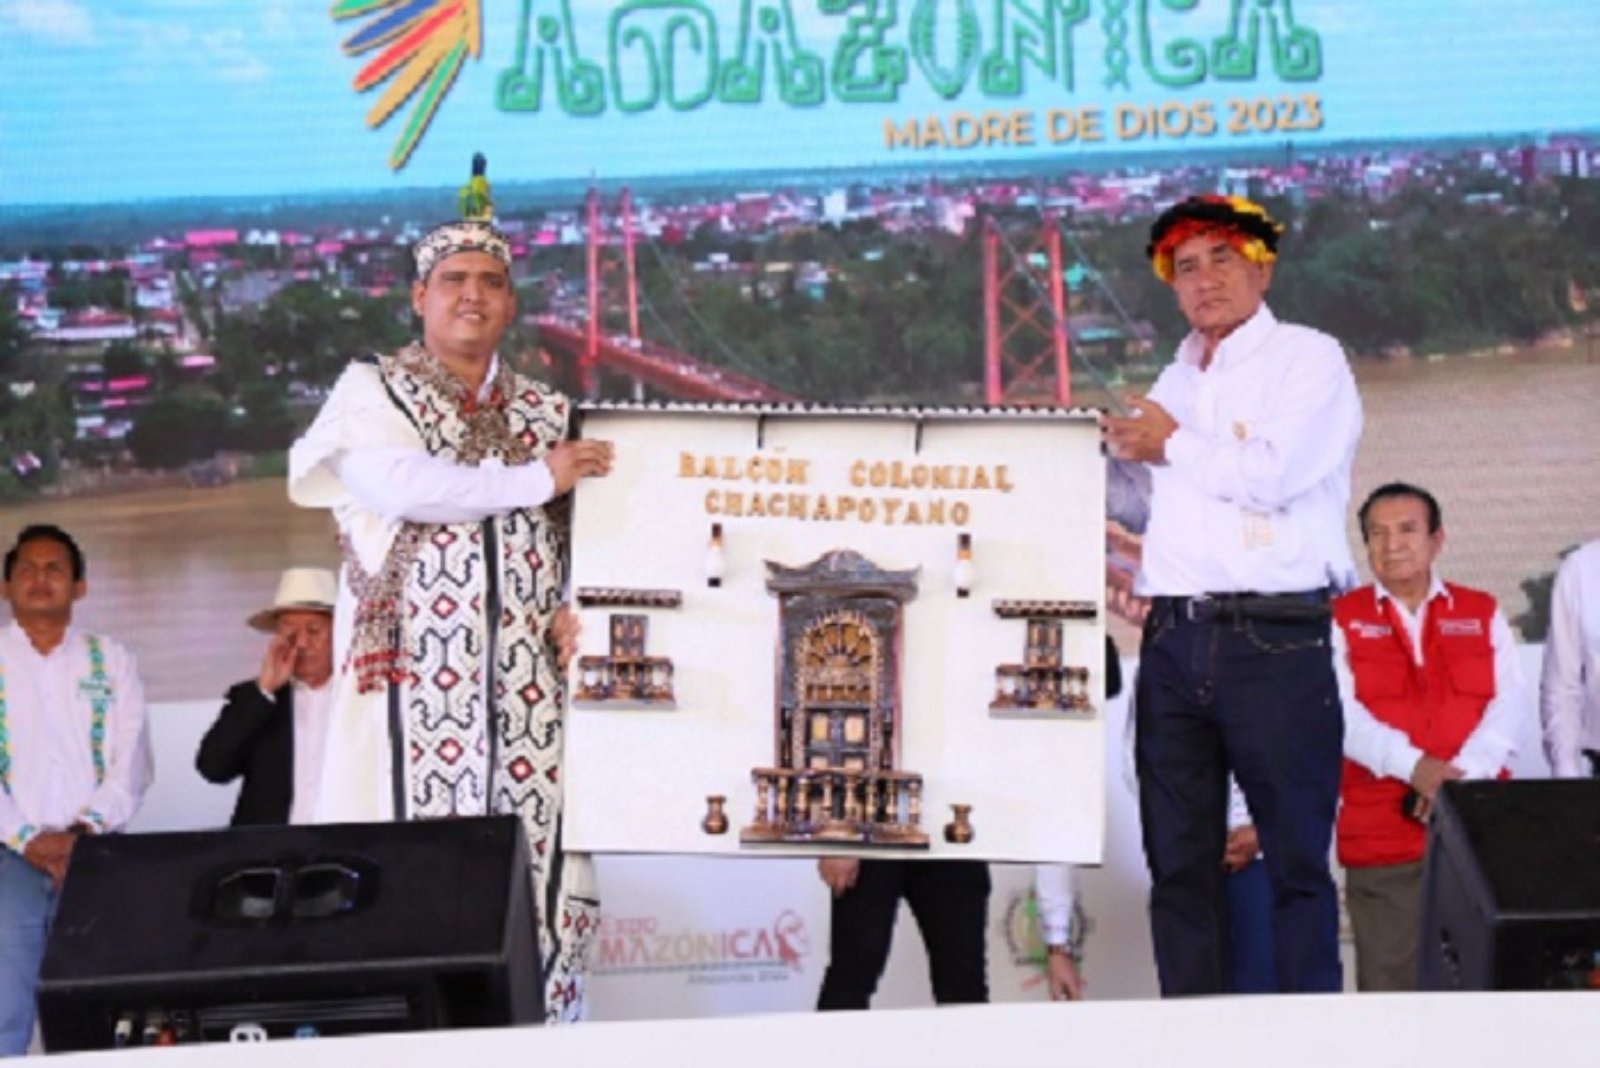 ExpoAmazónica 2022 entregó la posta a región Madre de Dios